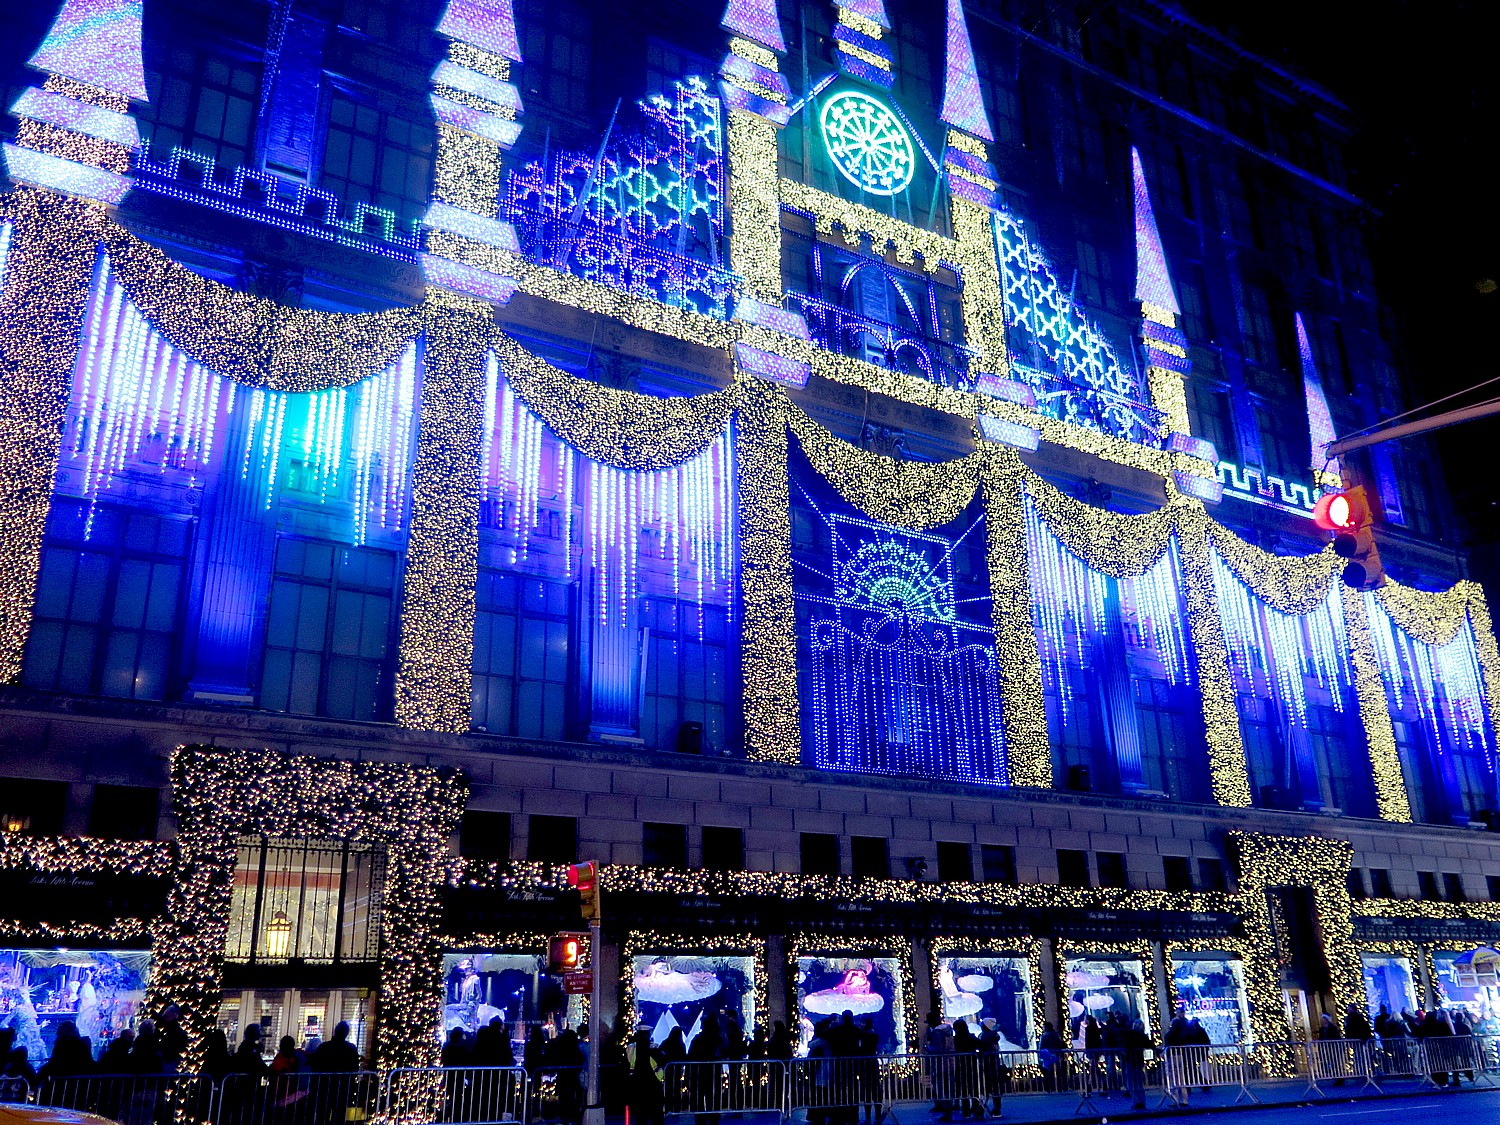 Saks 5th Avenue turns its façade into a holiday Sound & Light Show © 2016 Karen Rubin/goingplacesfarandnear.com